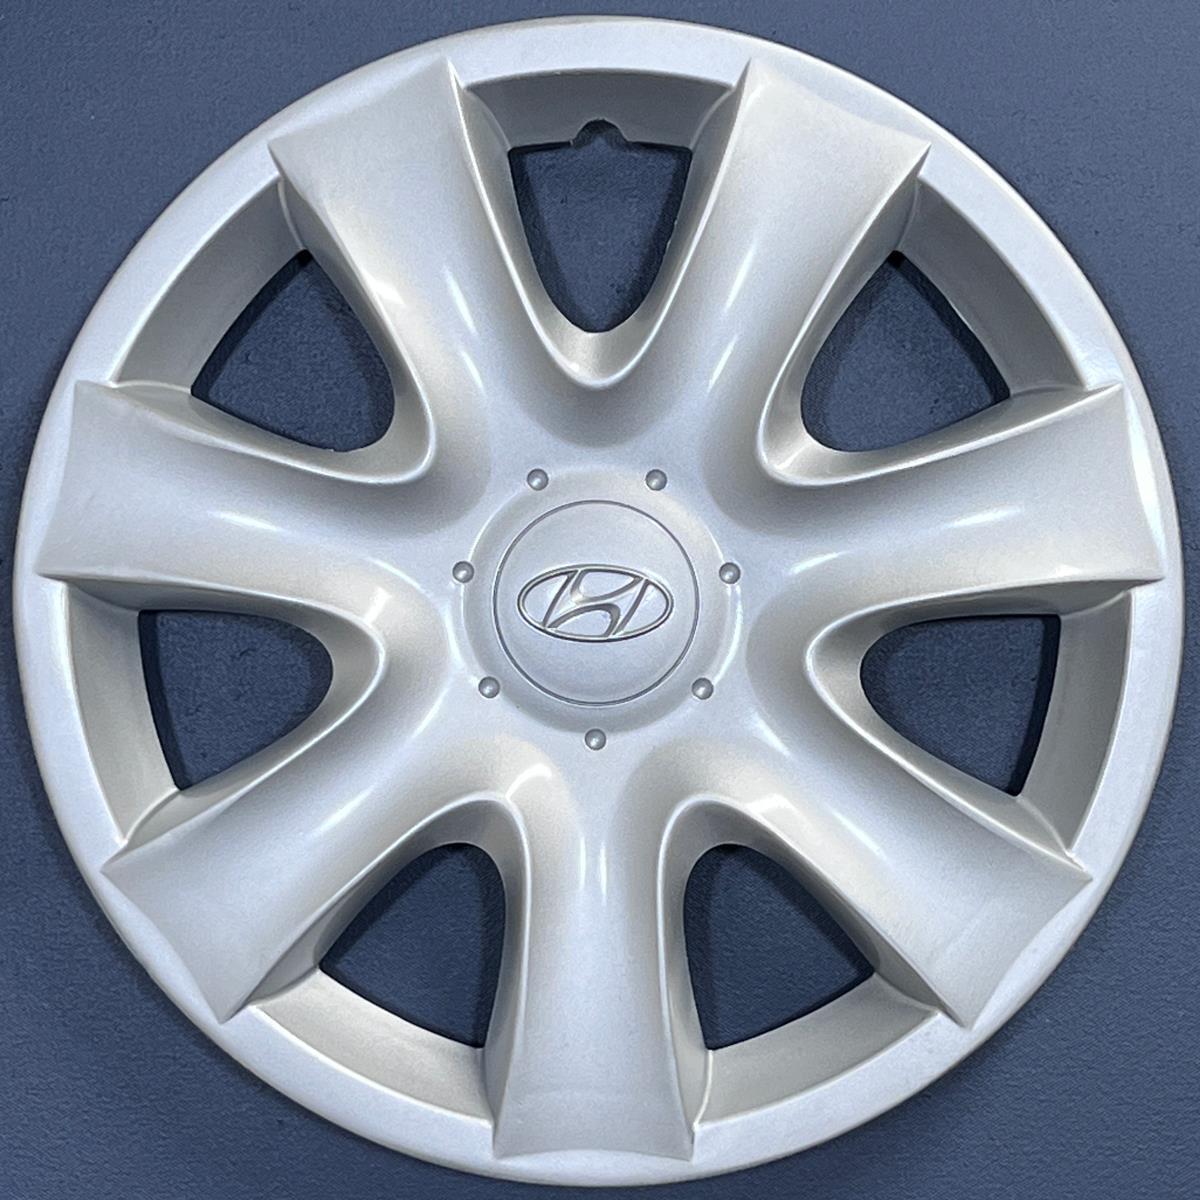 ONE 2002-2005 Hyundai Sonata # 55550 15" Hubcap Wheel Cover 529603D500 REPAINTED - $64.99